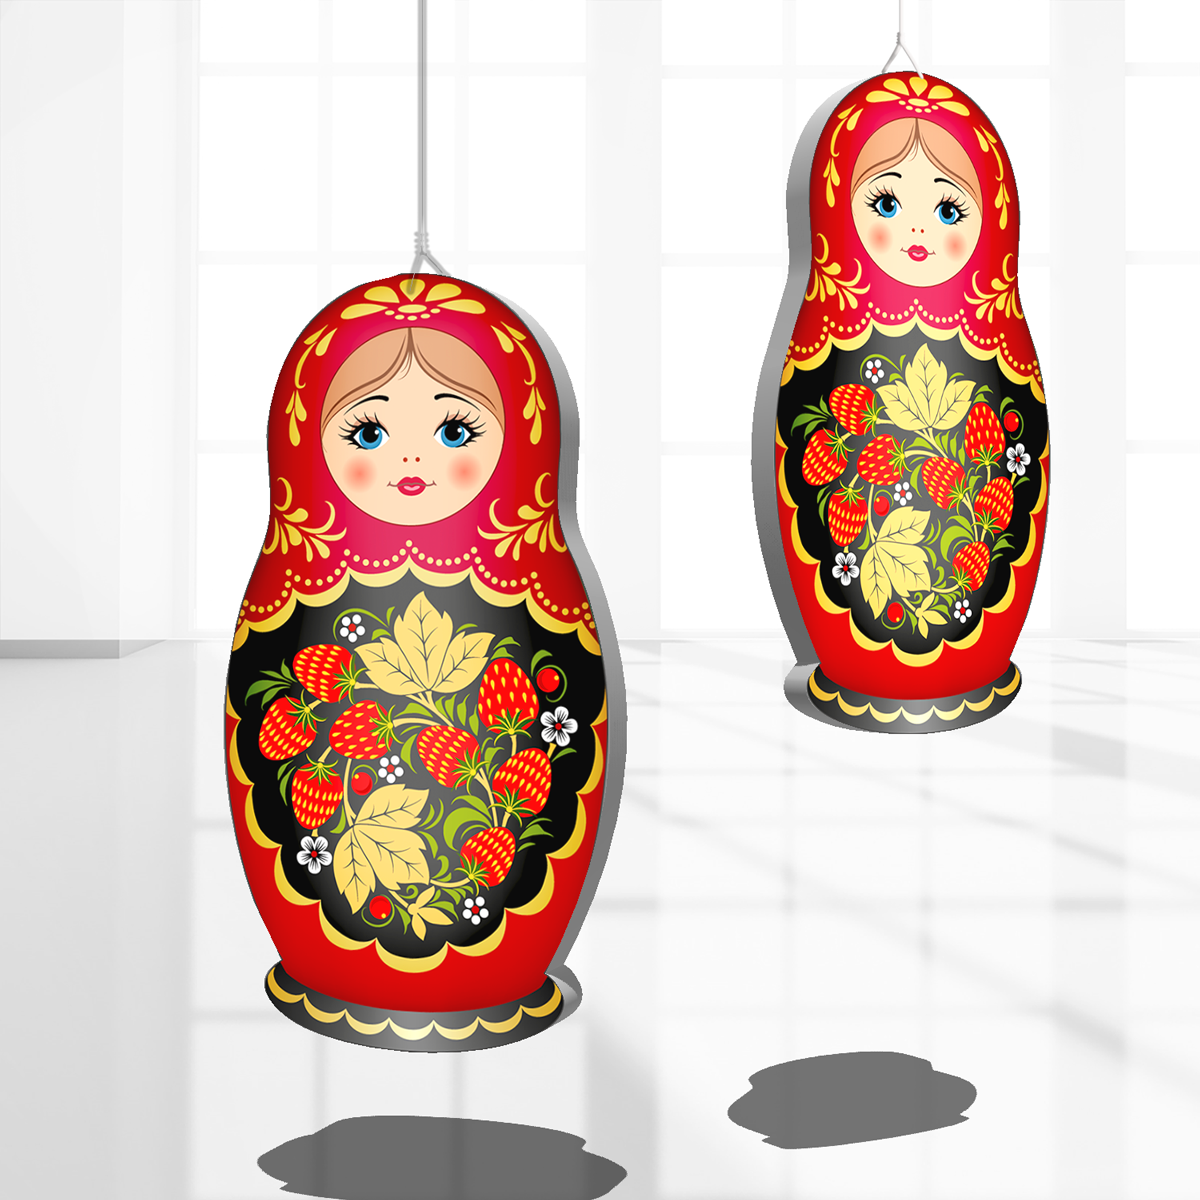 Подвесная фигура "Матрешка" / Интерьерное украшение с символом России - Матрешкой / 12x20 см.